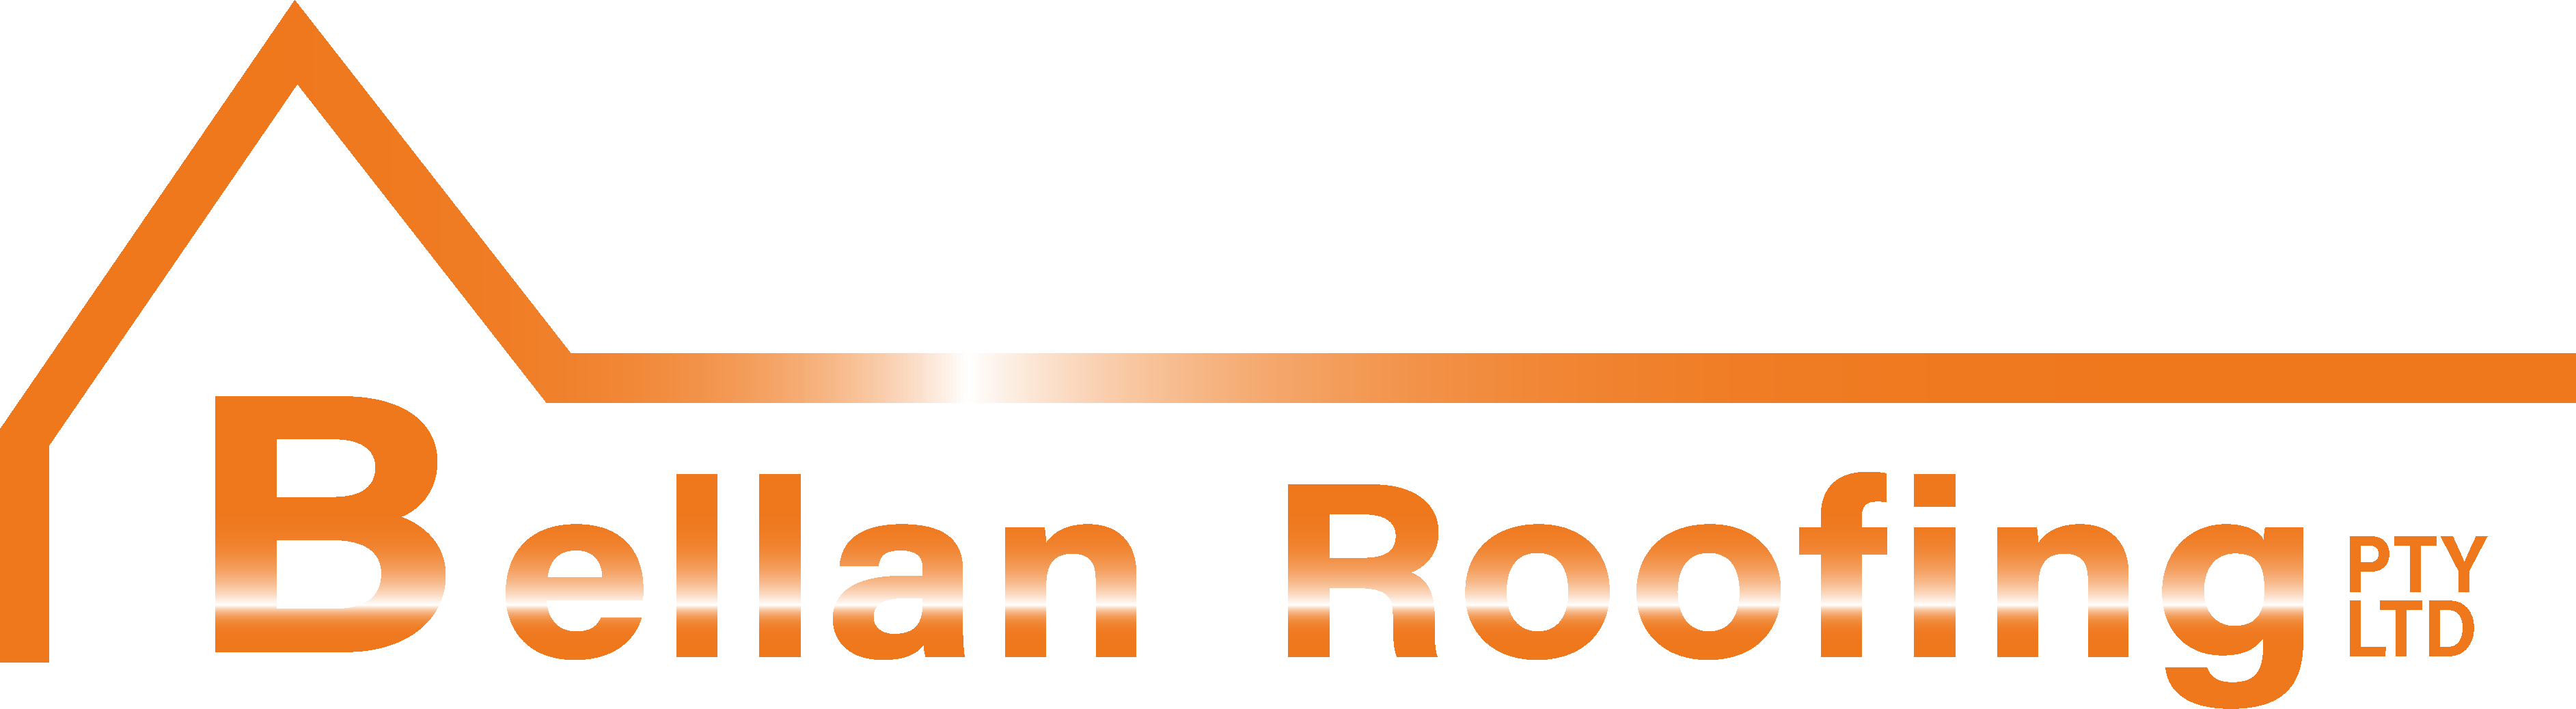 bellan roofing logo